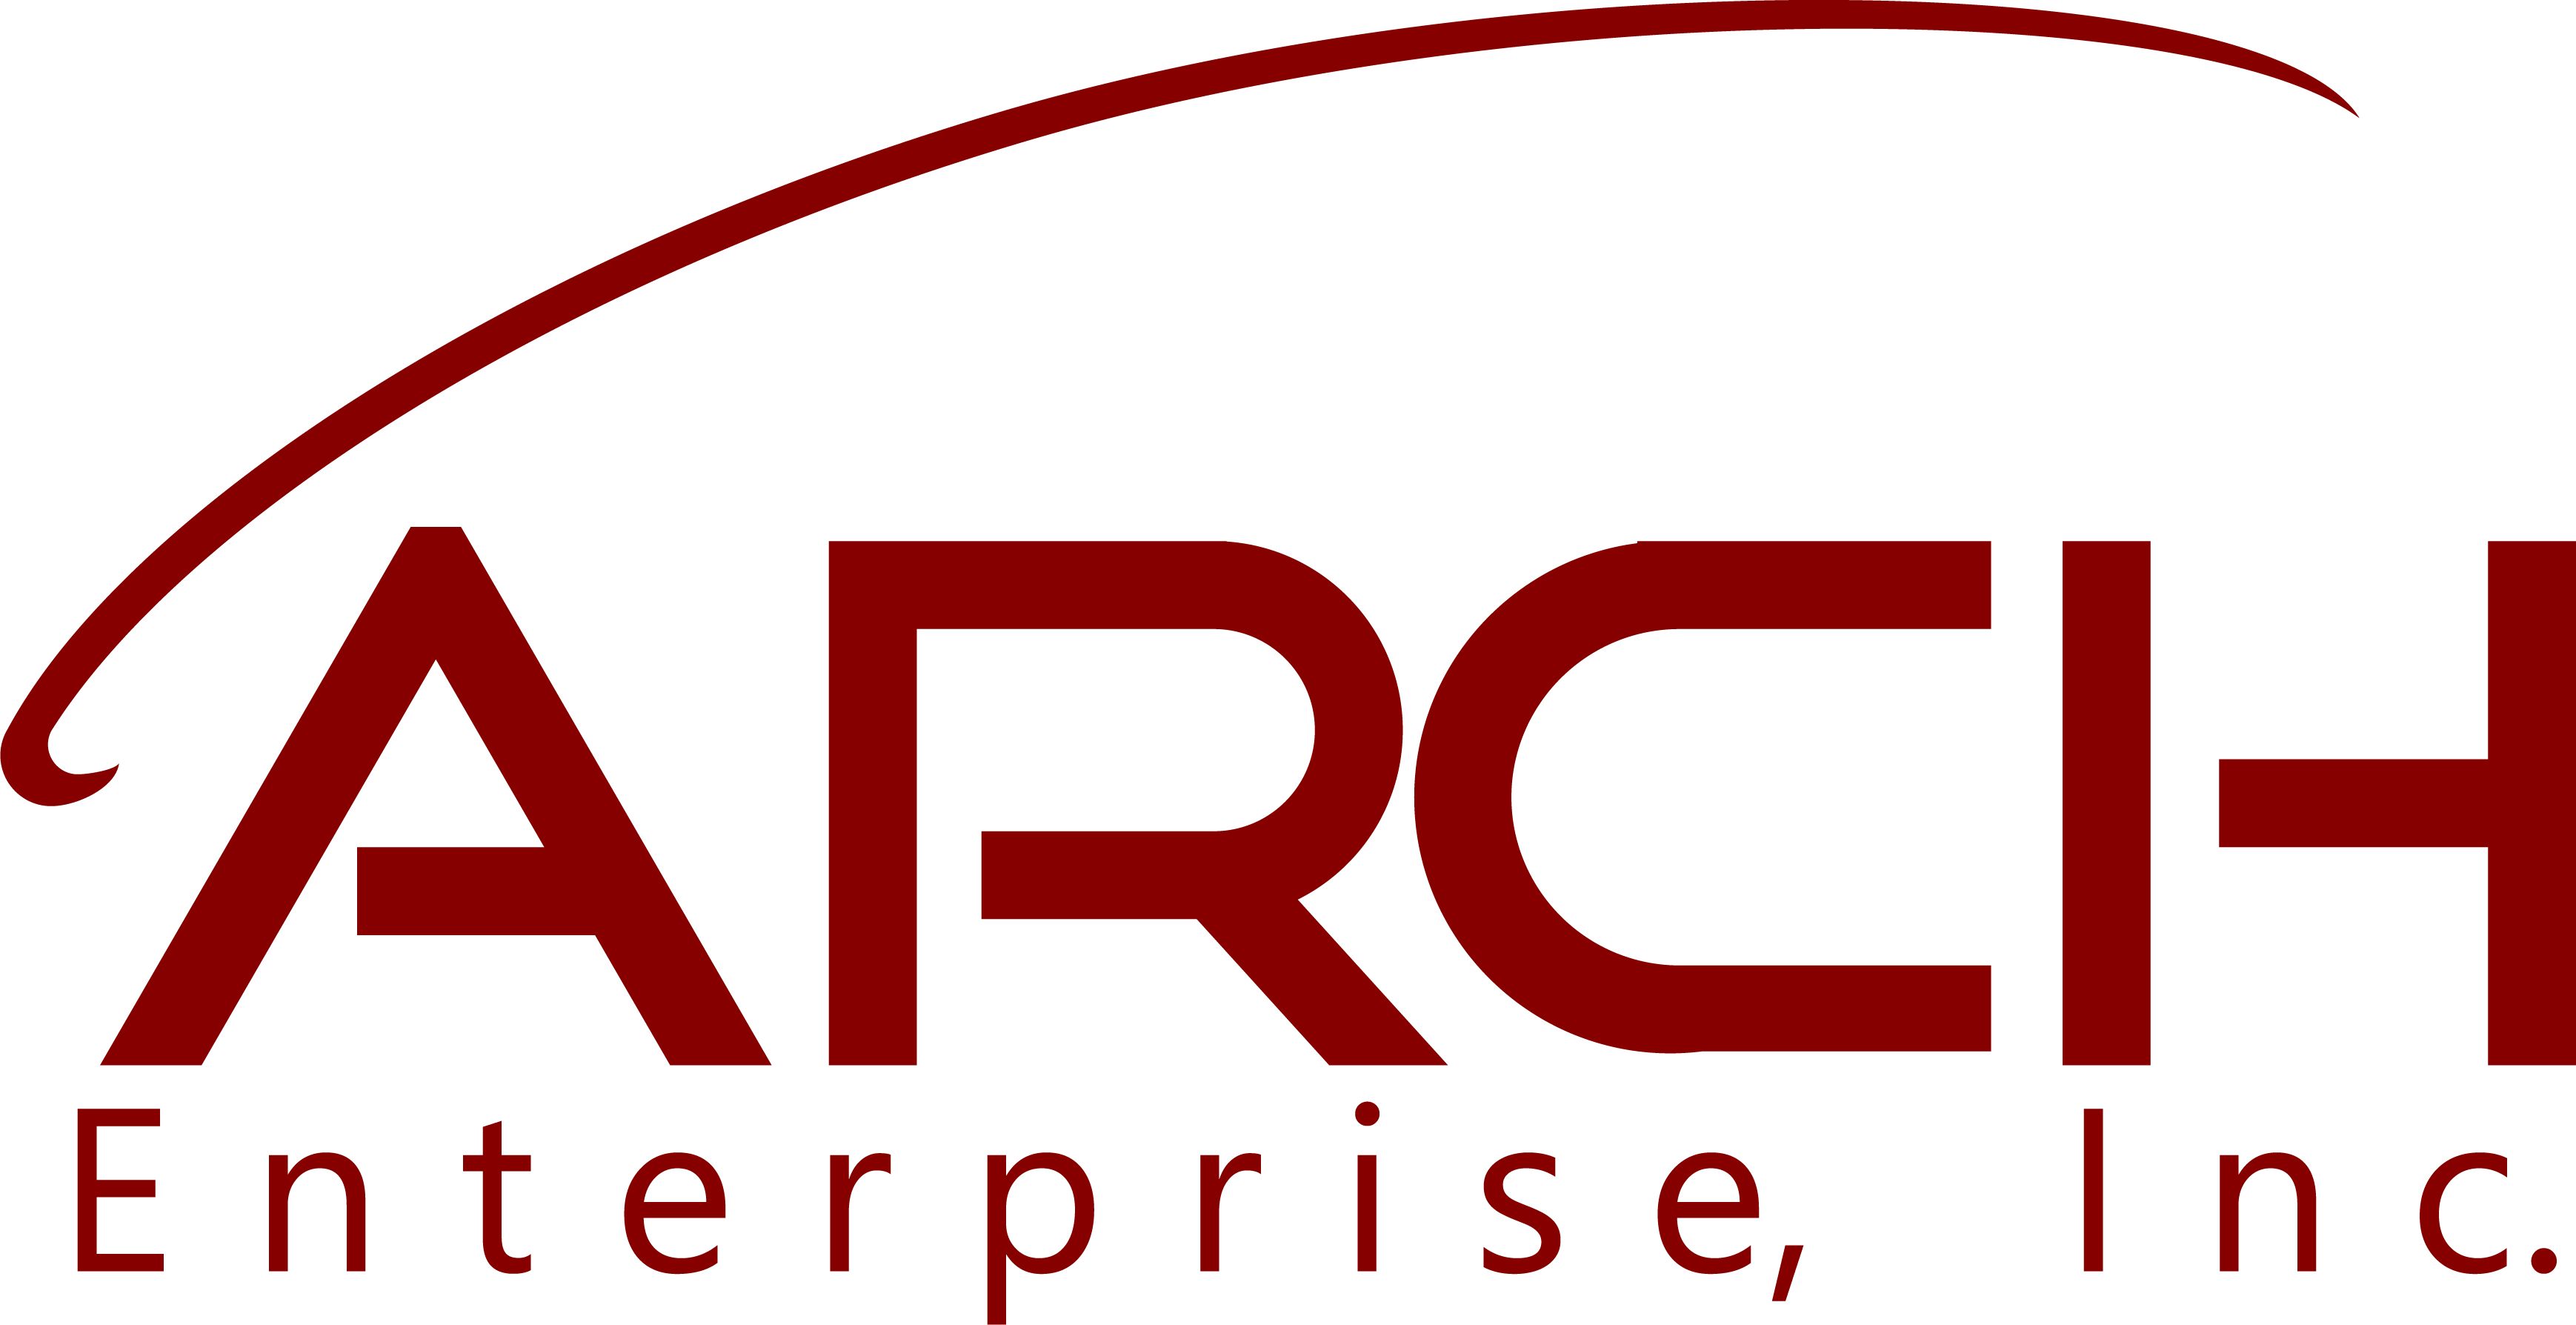 ARCH Enterprise, Inc